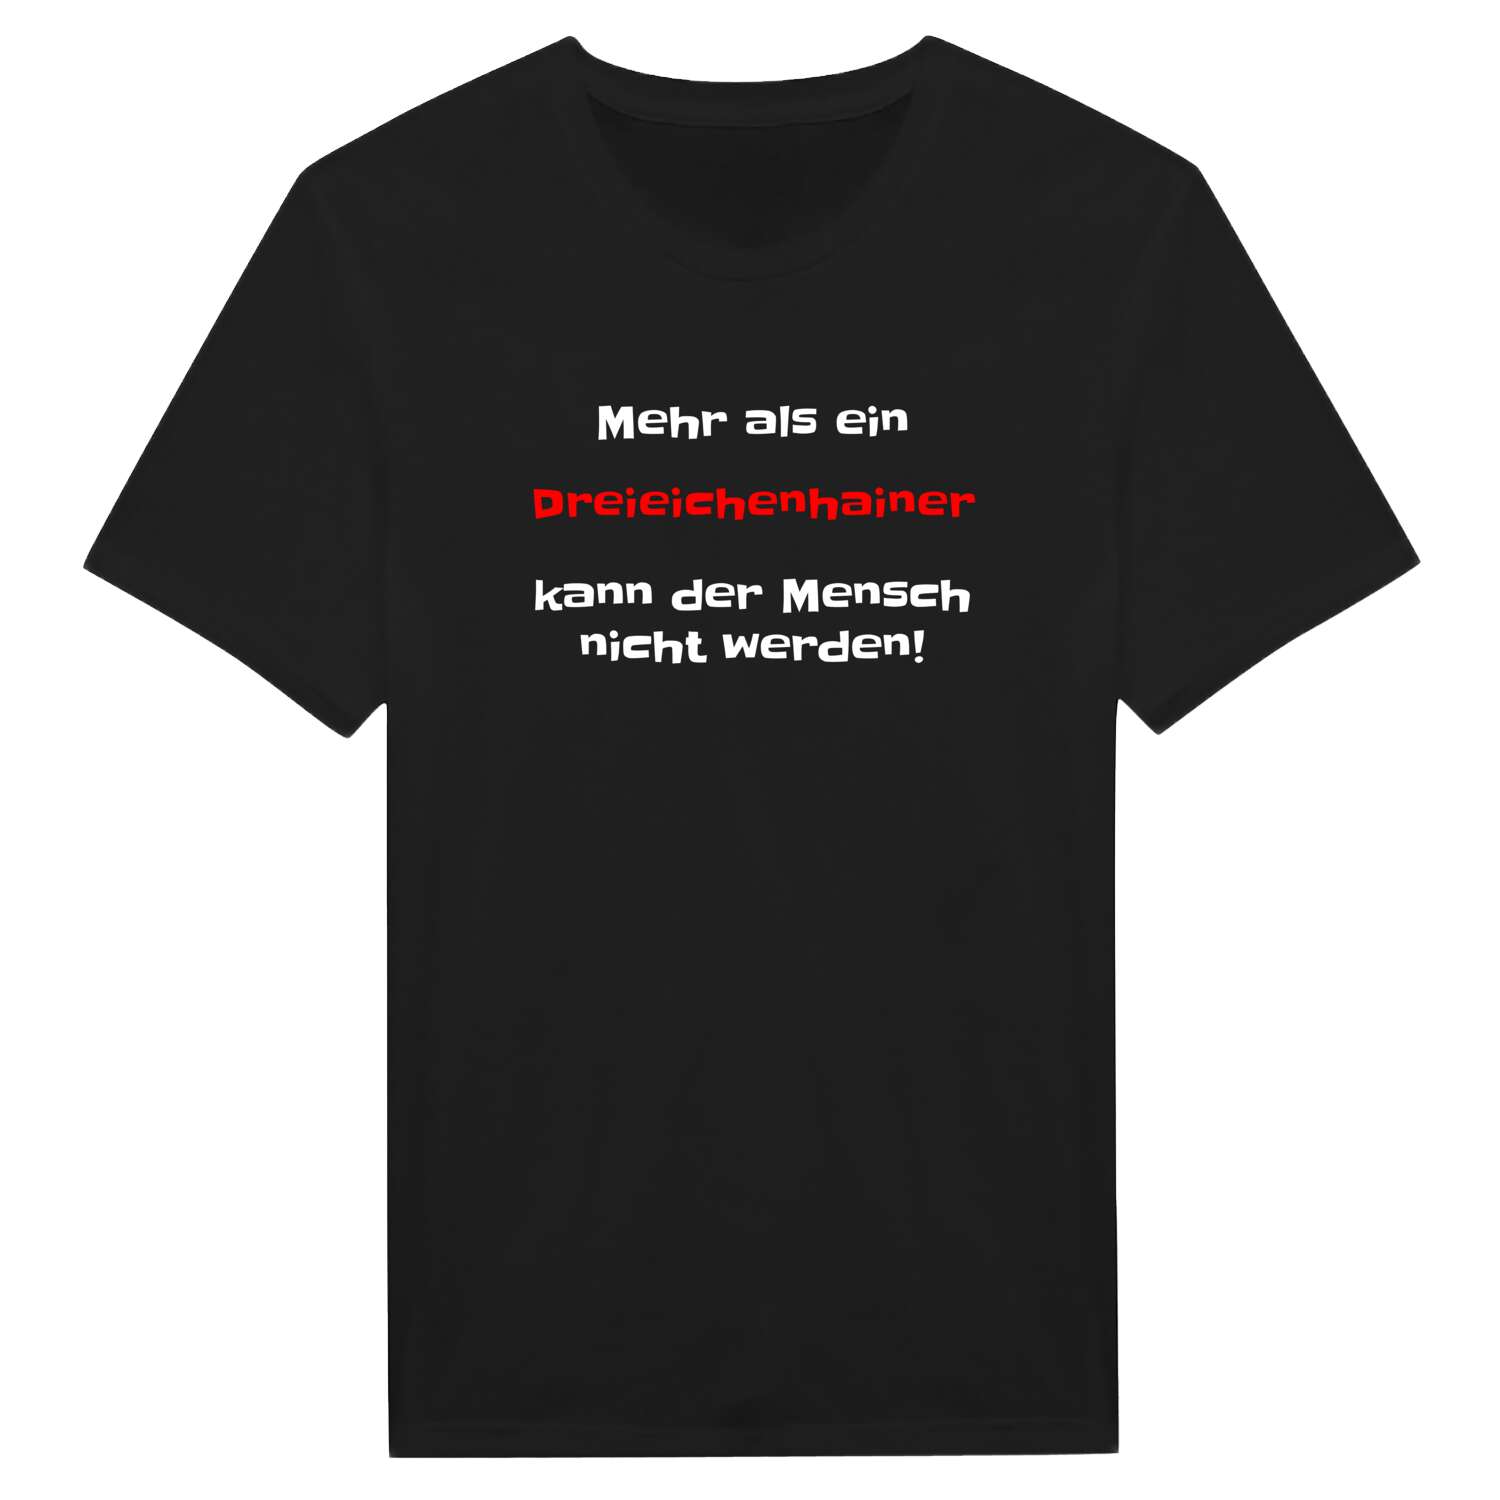 Dreieichenhain T-Shirt »Mehr als ein«